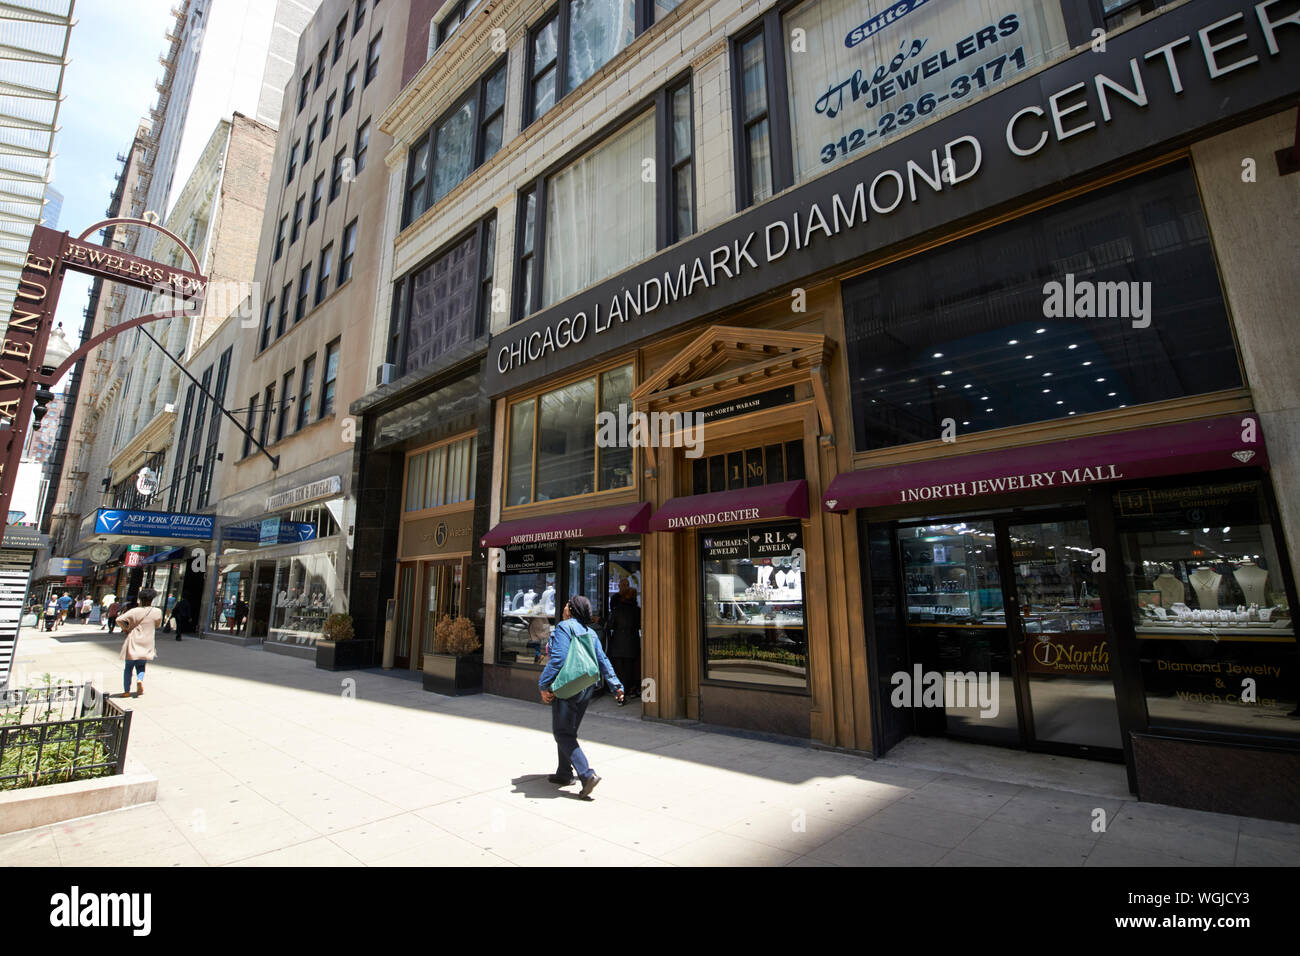 chicago landmark diamond center jewelers row wabash ave chicago illinois united states of america Stock Photo